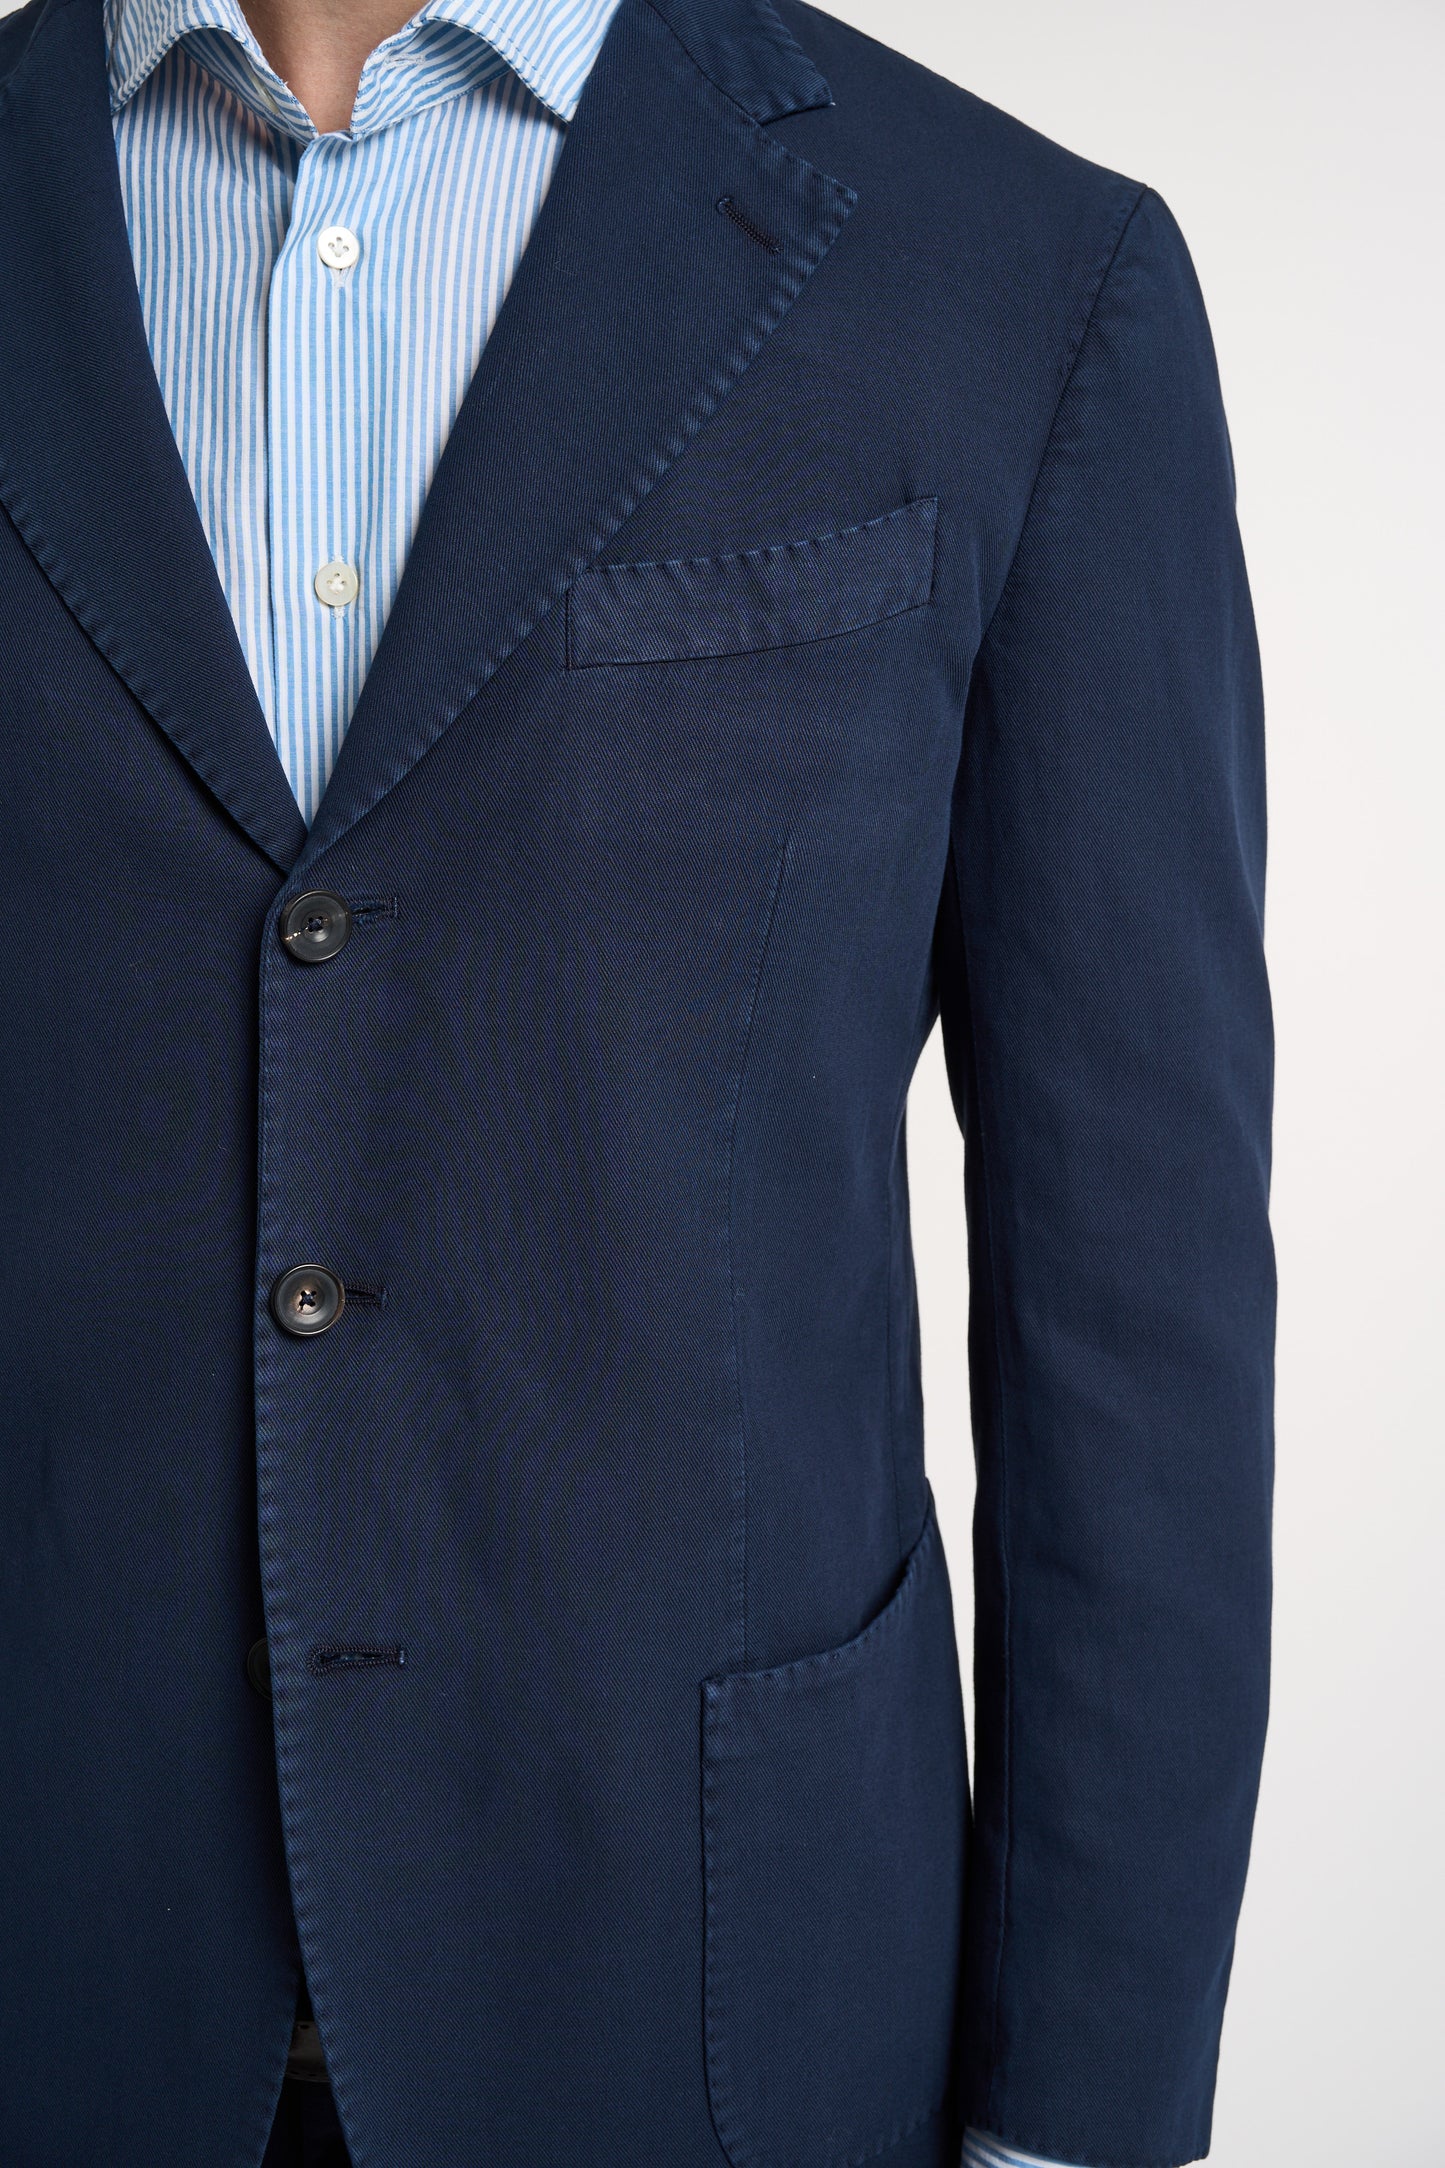  Santaniello Blue Cotton And Linen Suit Blu Uomo - 5